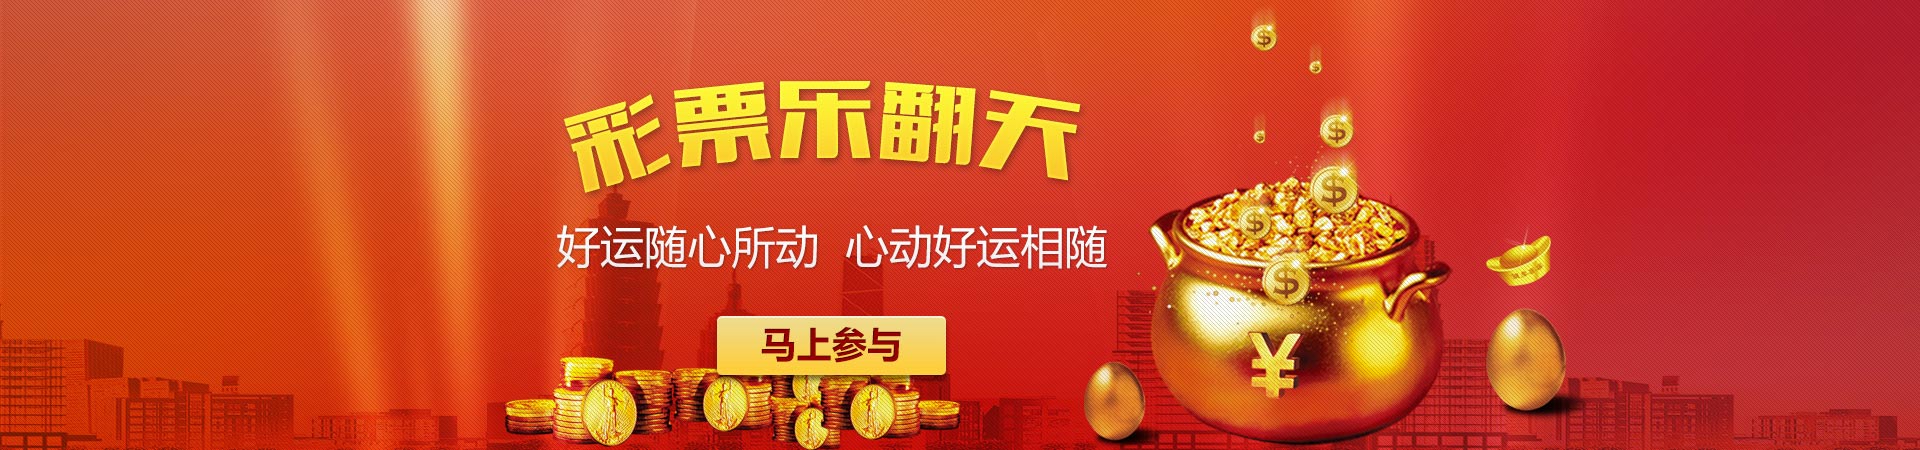 百达平台「传承人文乐享生活」banner